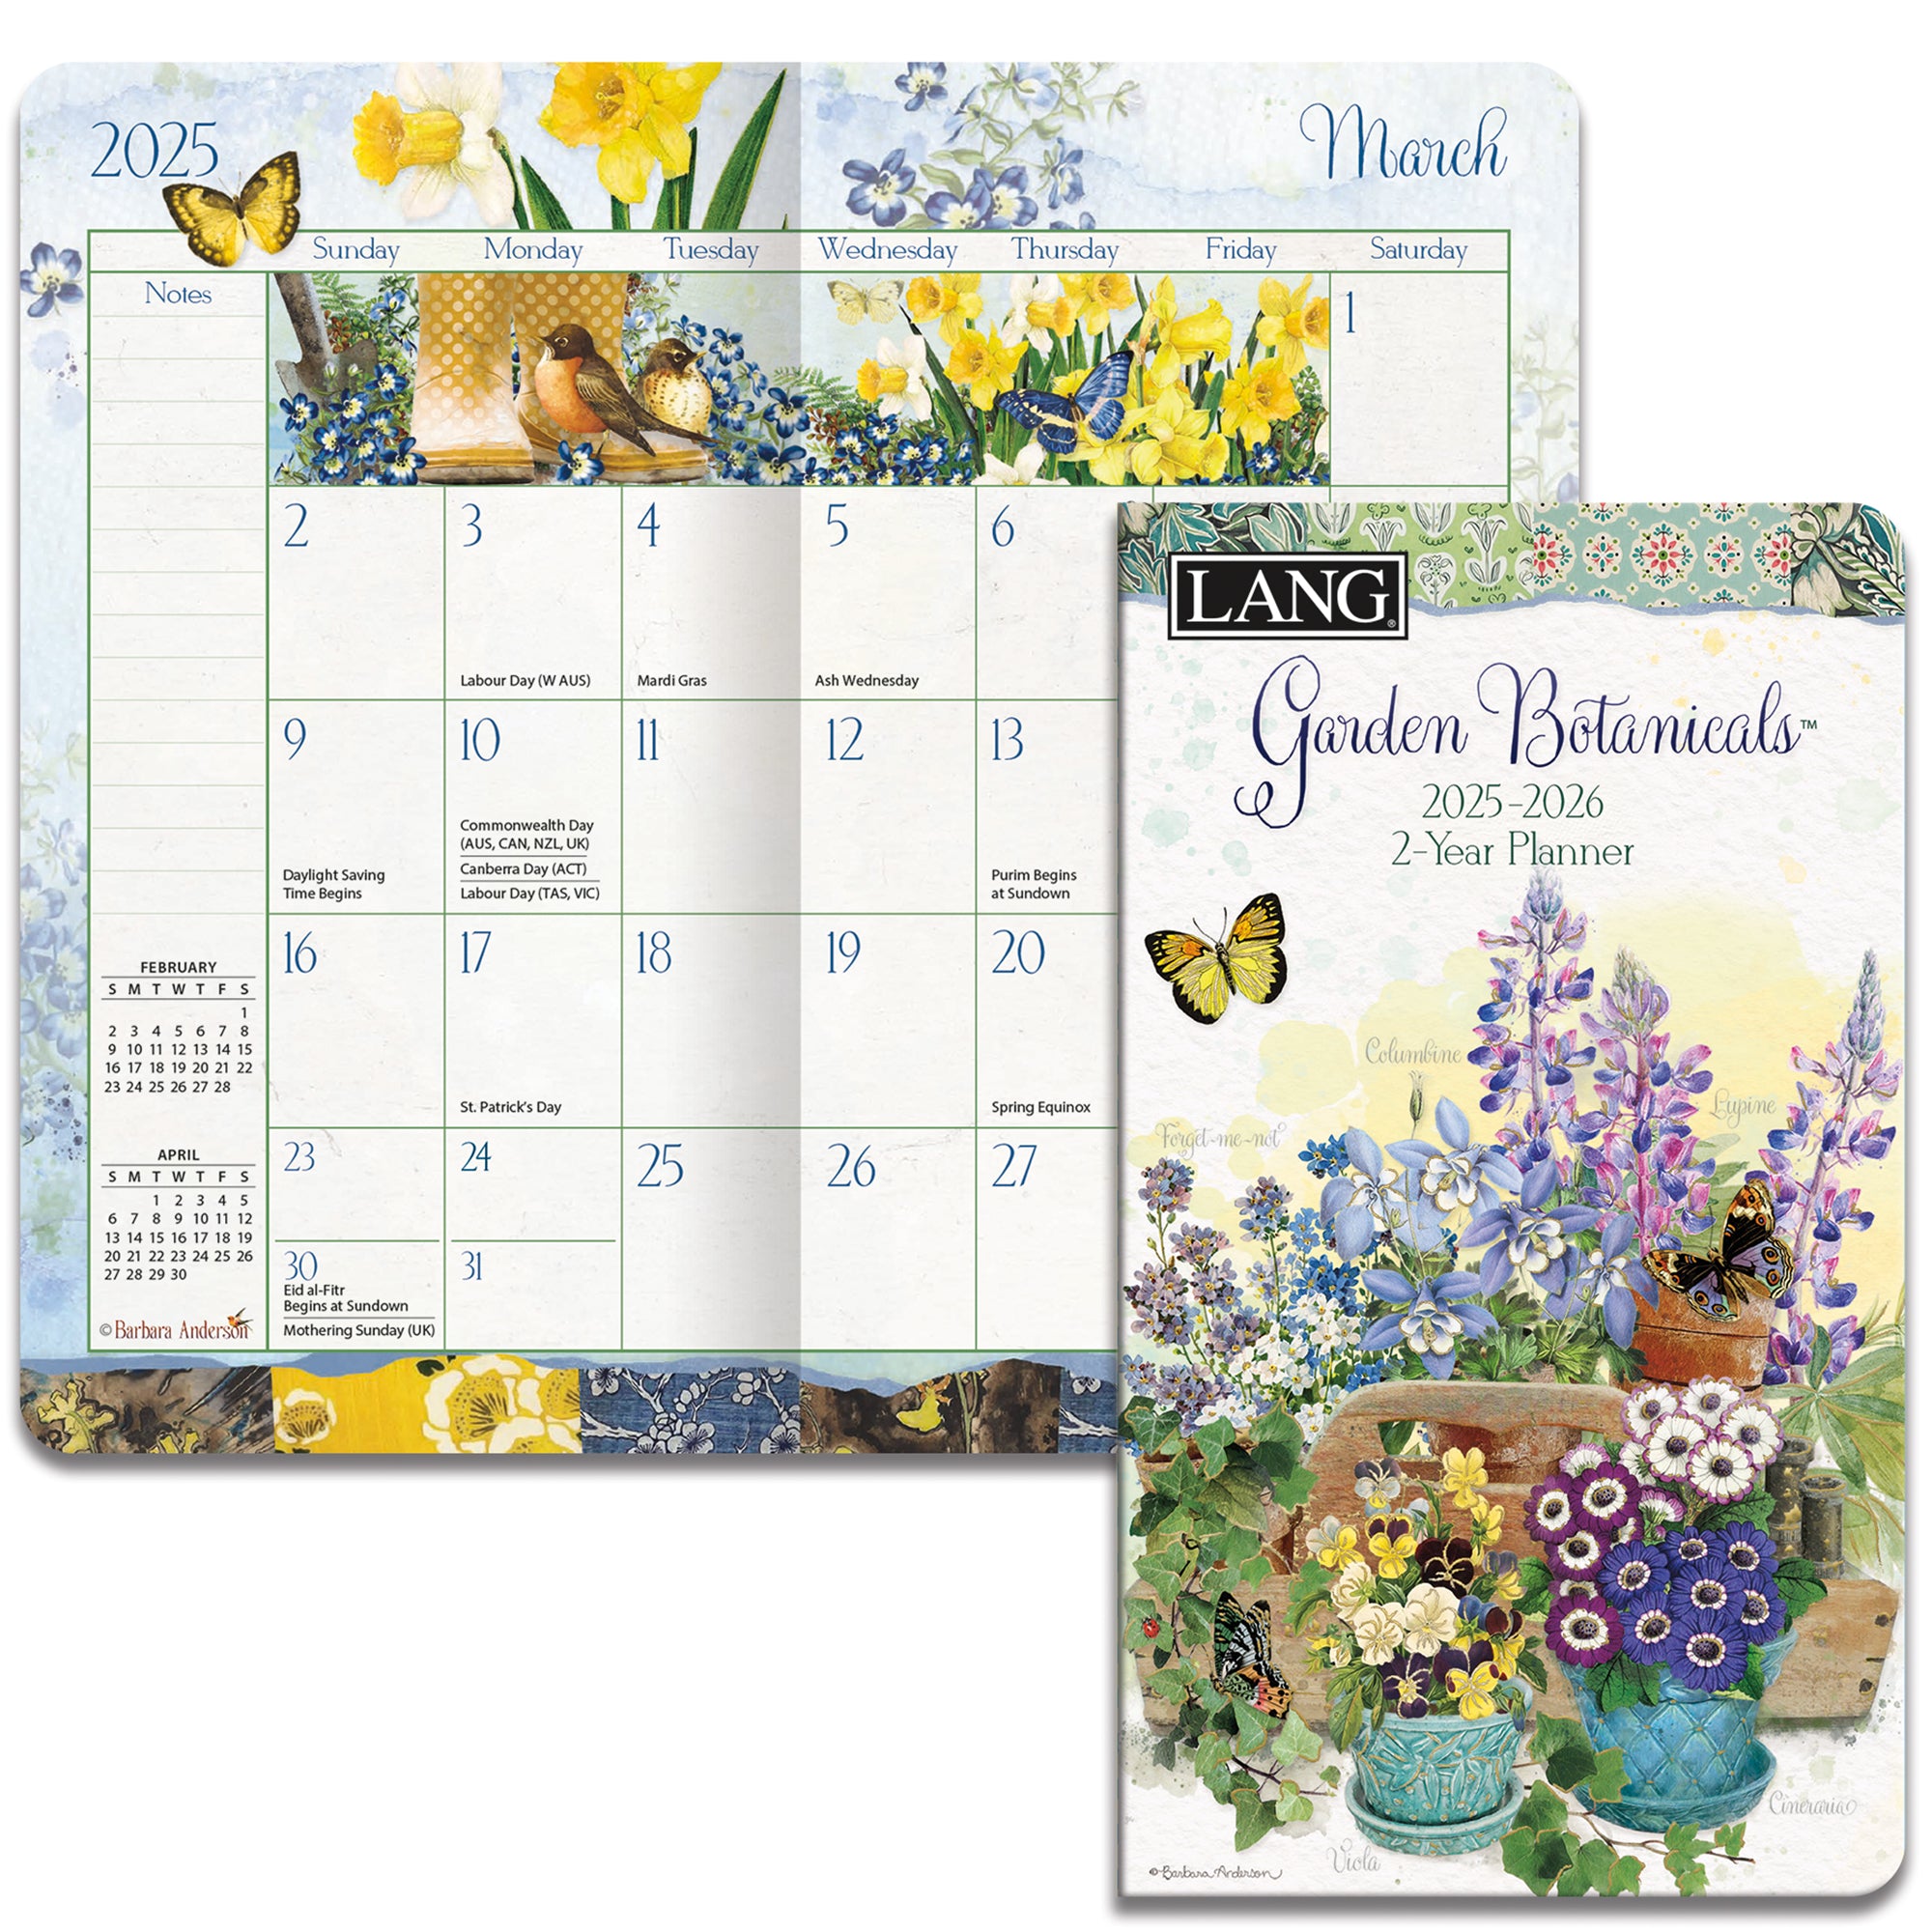 2025-2026 LANG Garden Botanicals - 2 Year Pocket Diary/Planner